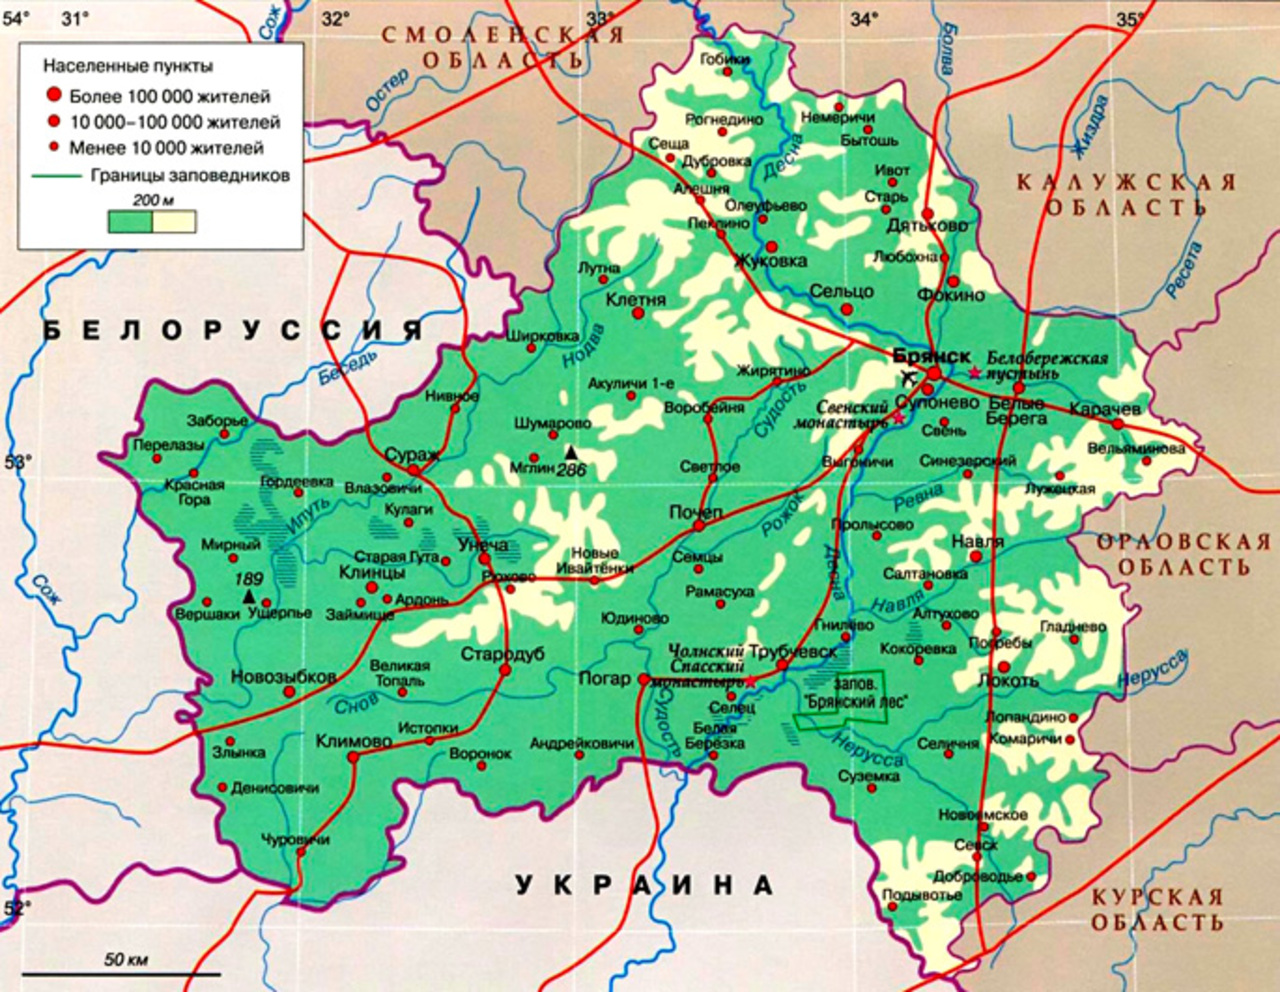 Брянск это украина. Брянская область на карте границы. Области Украины граничащие с Брянской областью. Брянская обл граница с Украиной на карте. Области граничащие с Брянской областью.